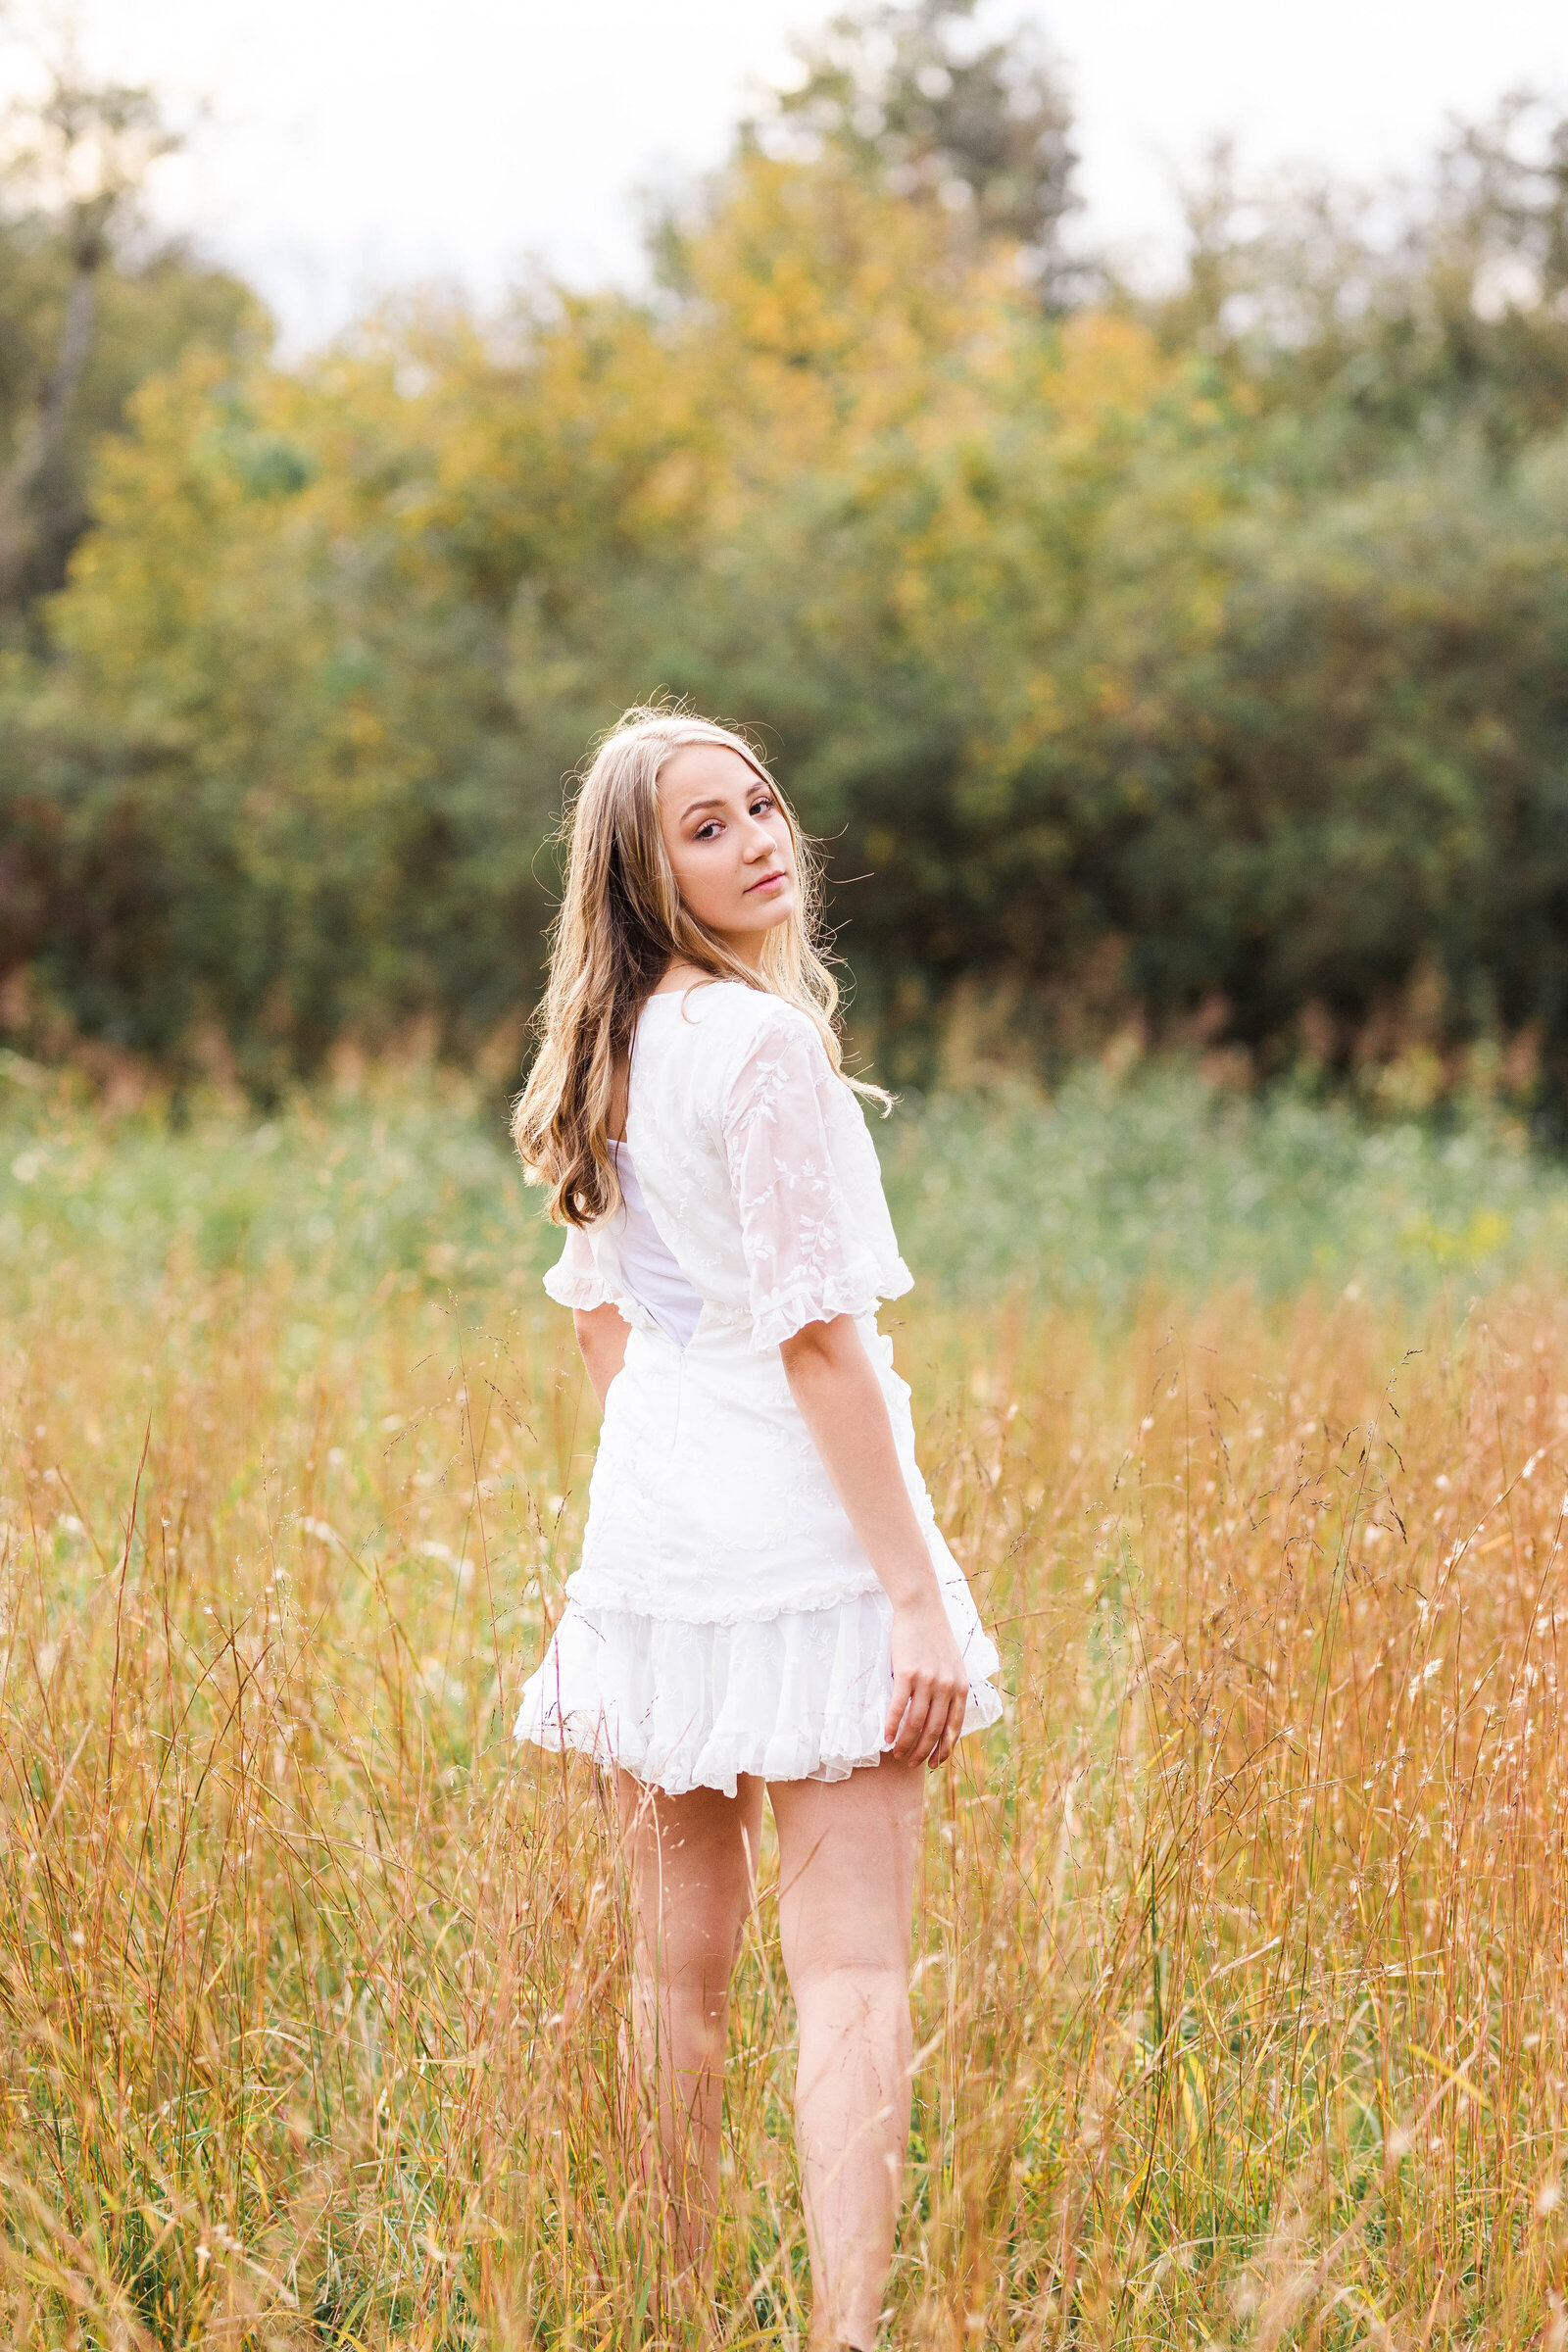 high school senior wearing a white dress walking in a field